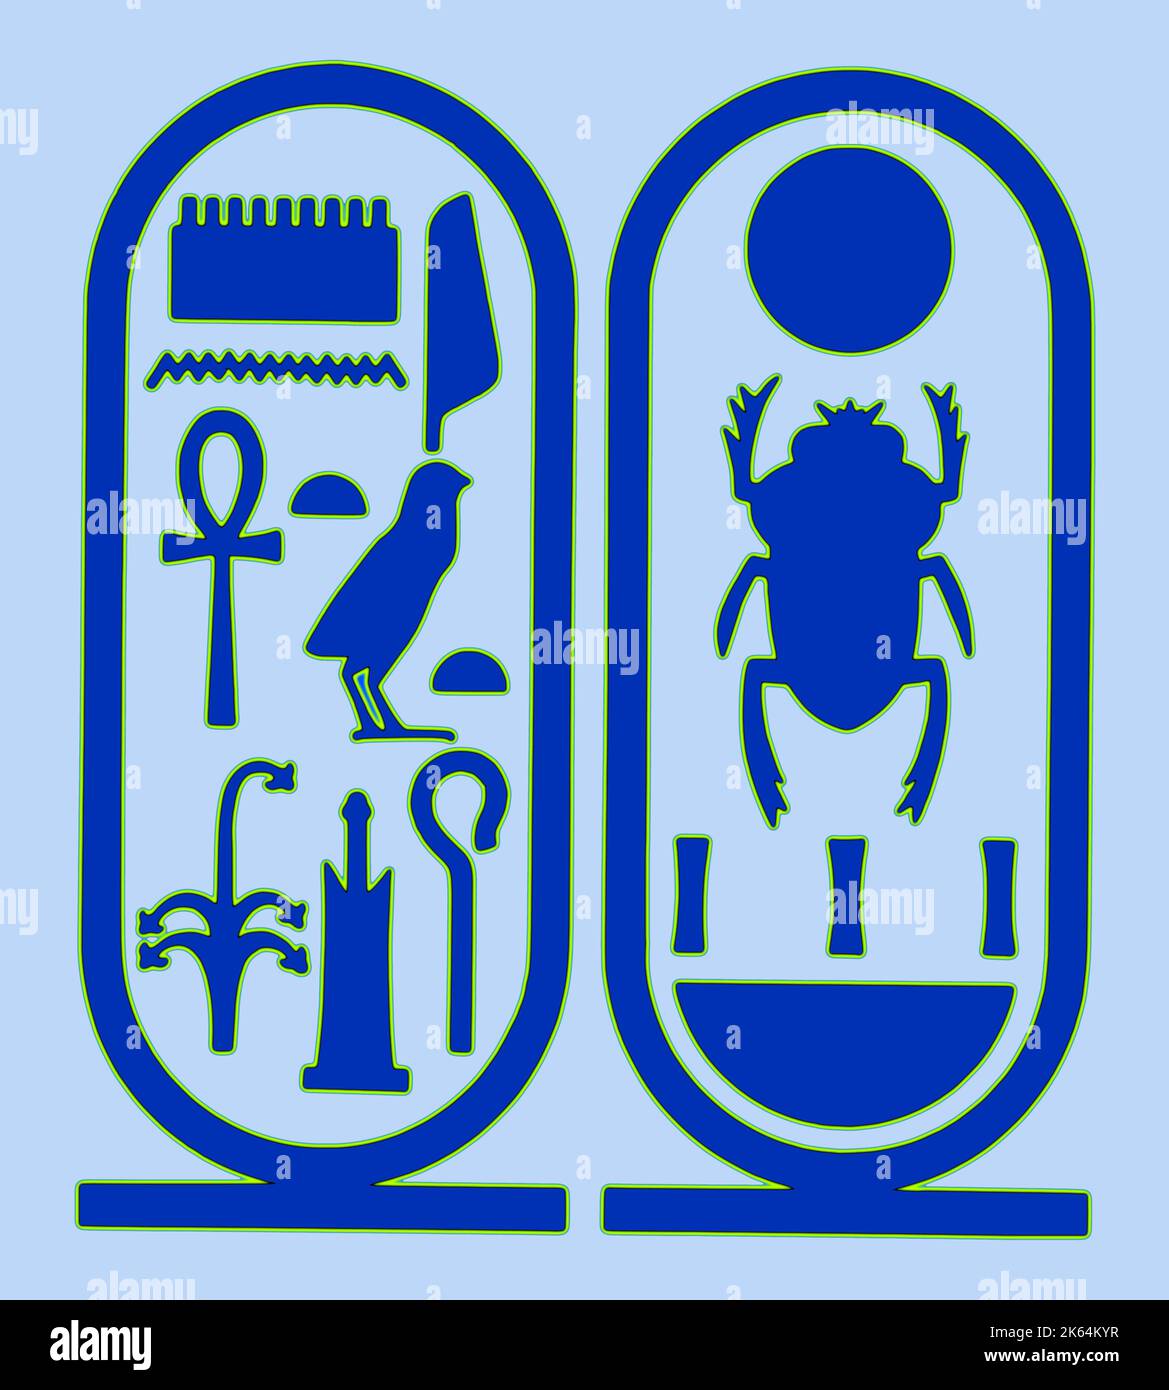 Cartouche avec l'orthographe hiéroglyphique du nom du Pharaon égyptien Toutankhamon avec l'épithète, 'Toutankhamon, dirigeant de l'on de la haute-Égypte (Thèbes),' et son nom de trône, 'Nebkheperura'. Banque D'Images